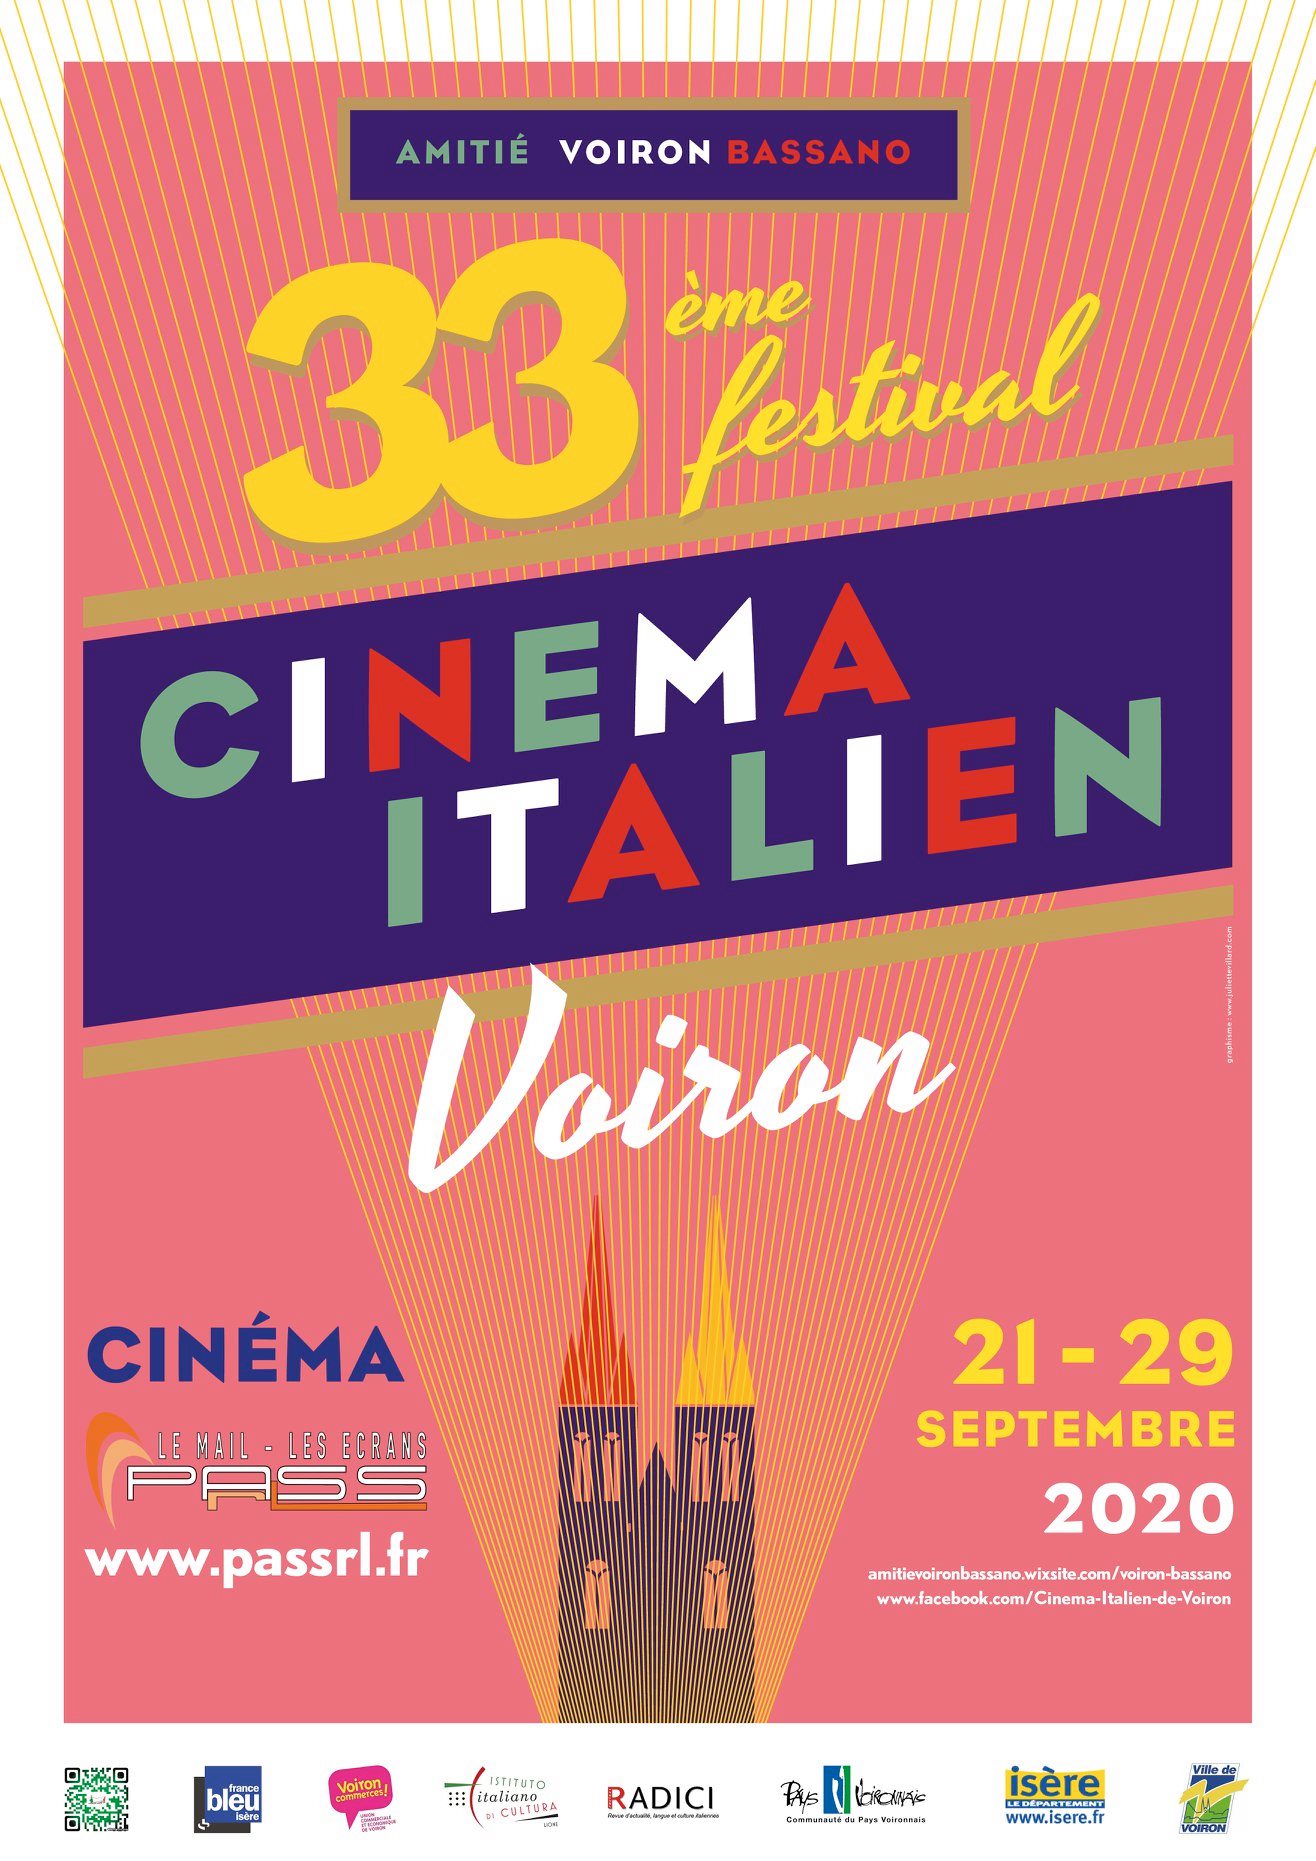 Voici notre nouvelle affiche  pour annoncer la 33ème édition du Festival de ciné...